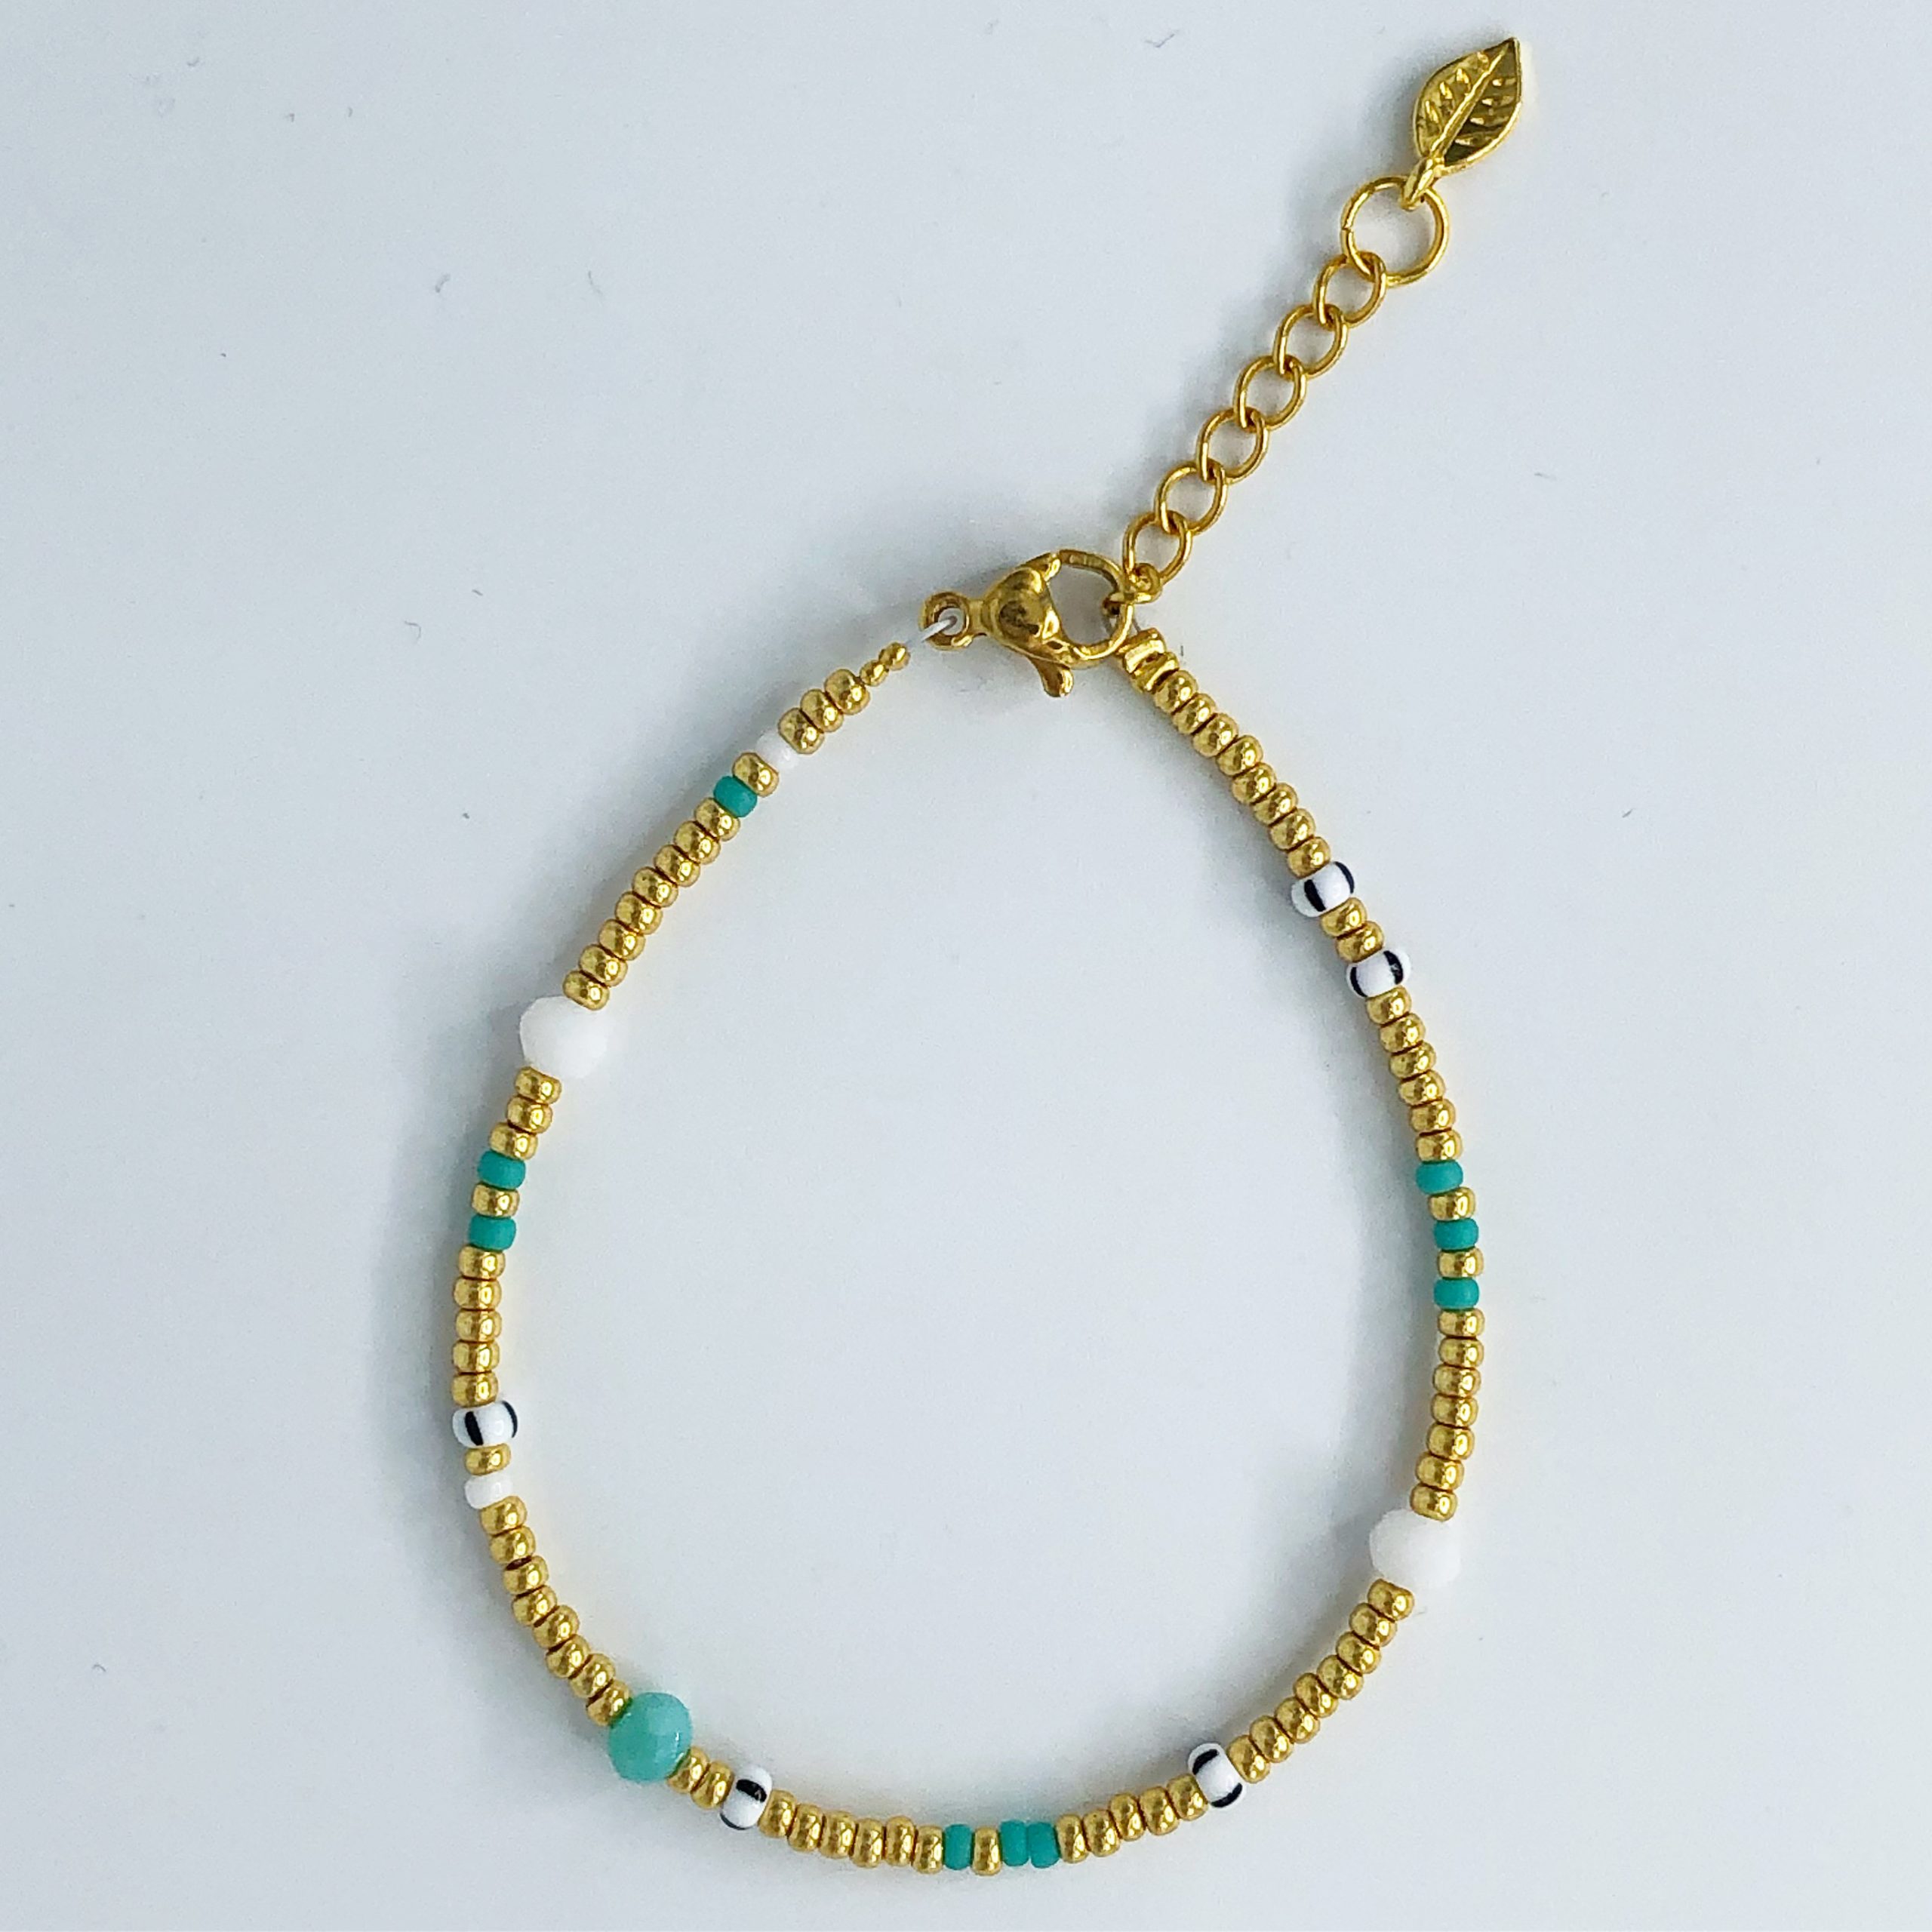 totaal zebra Arabisch Gouden armband met blauwe steentjes - Playa Venao collectie - Coco Balu